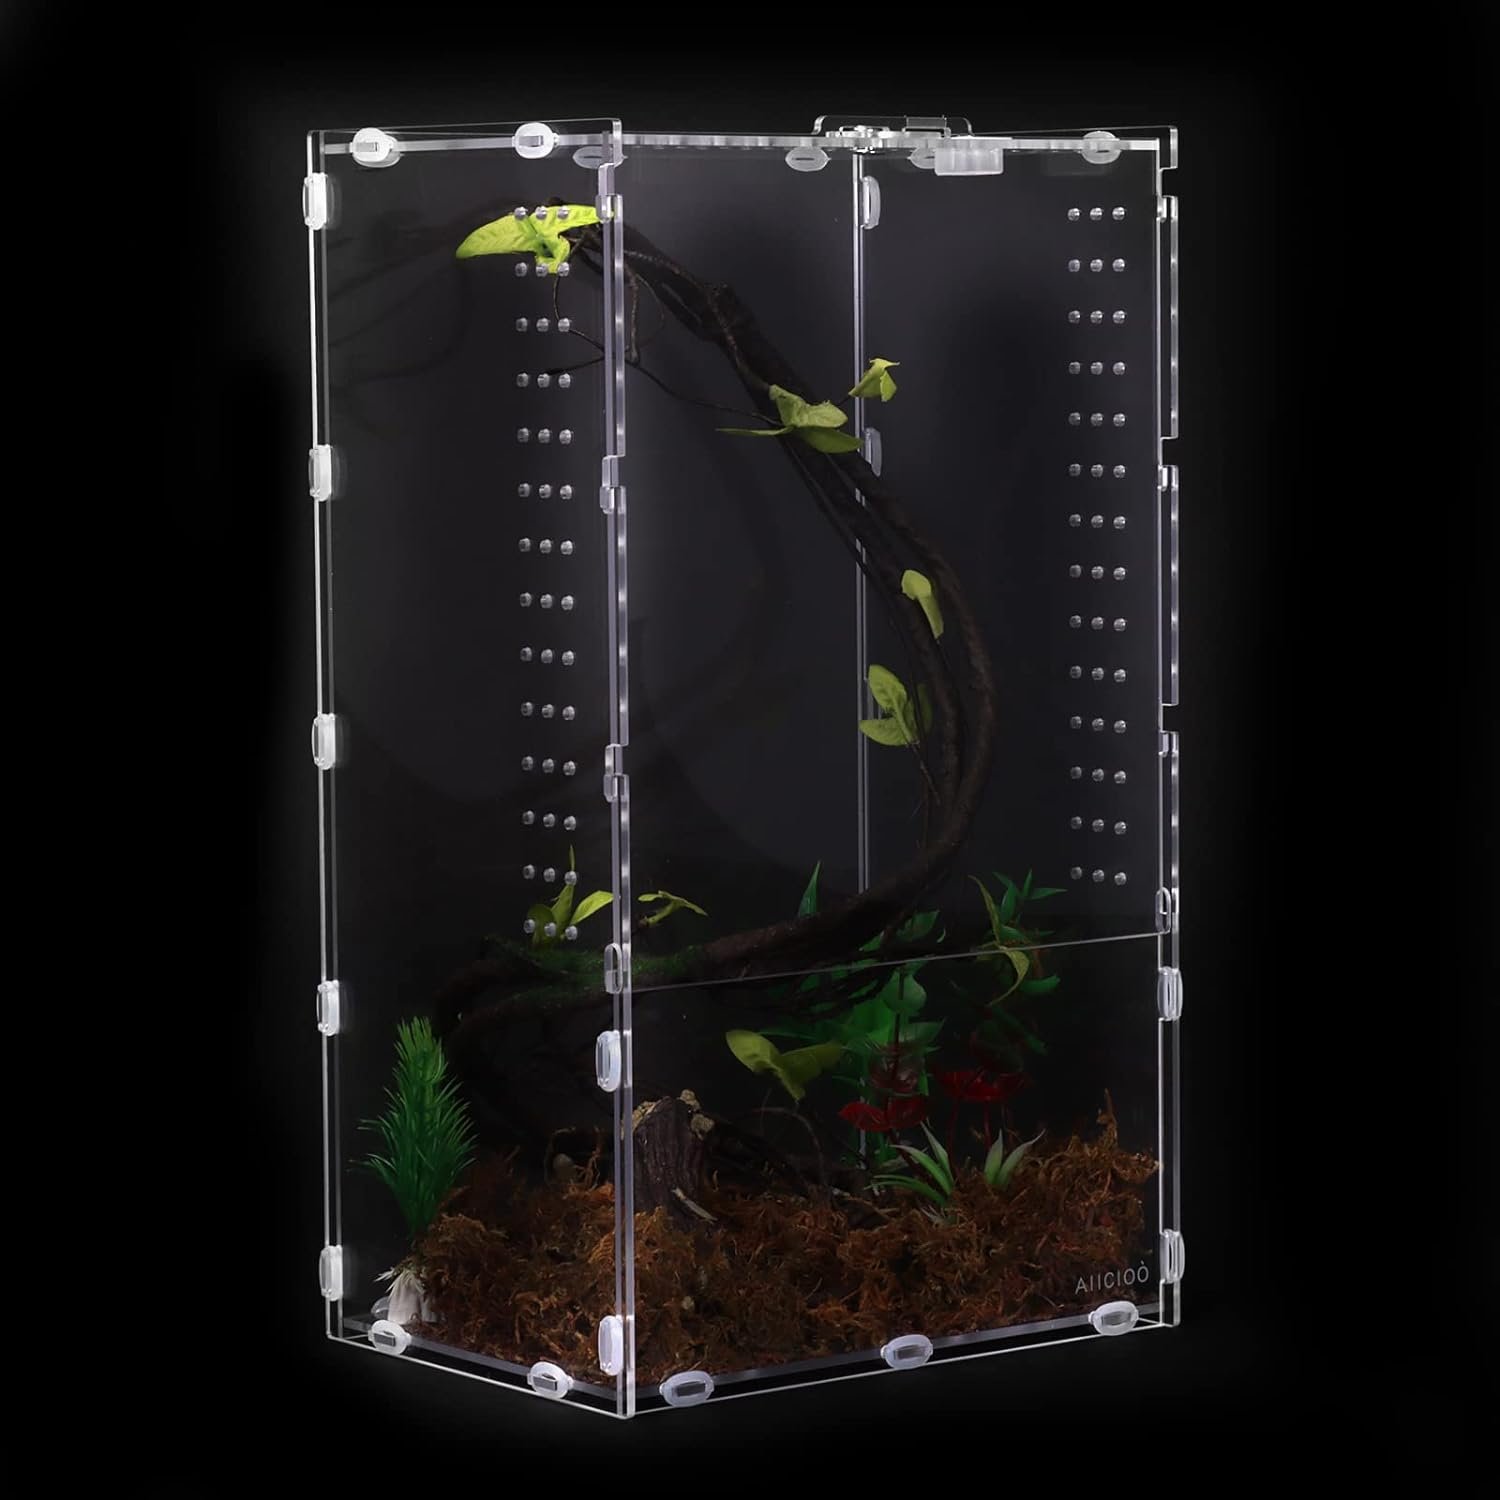 Micro Habitat Terrarium Enclosure Review